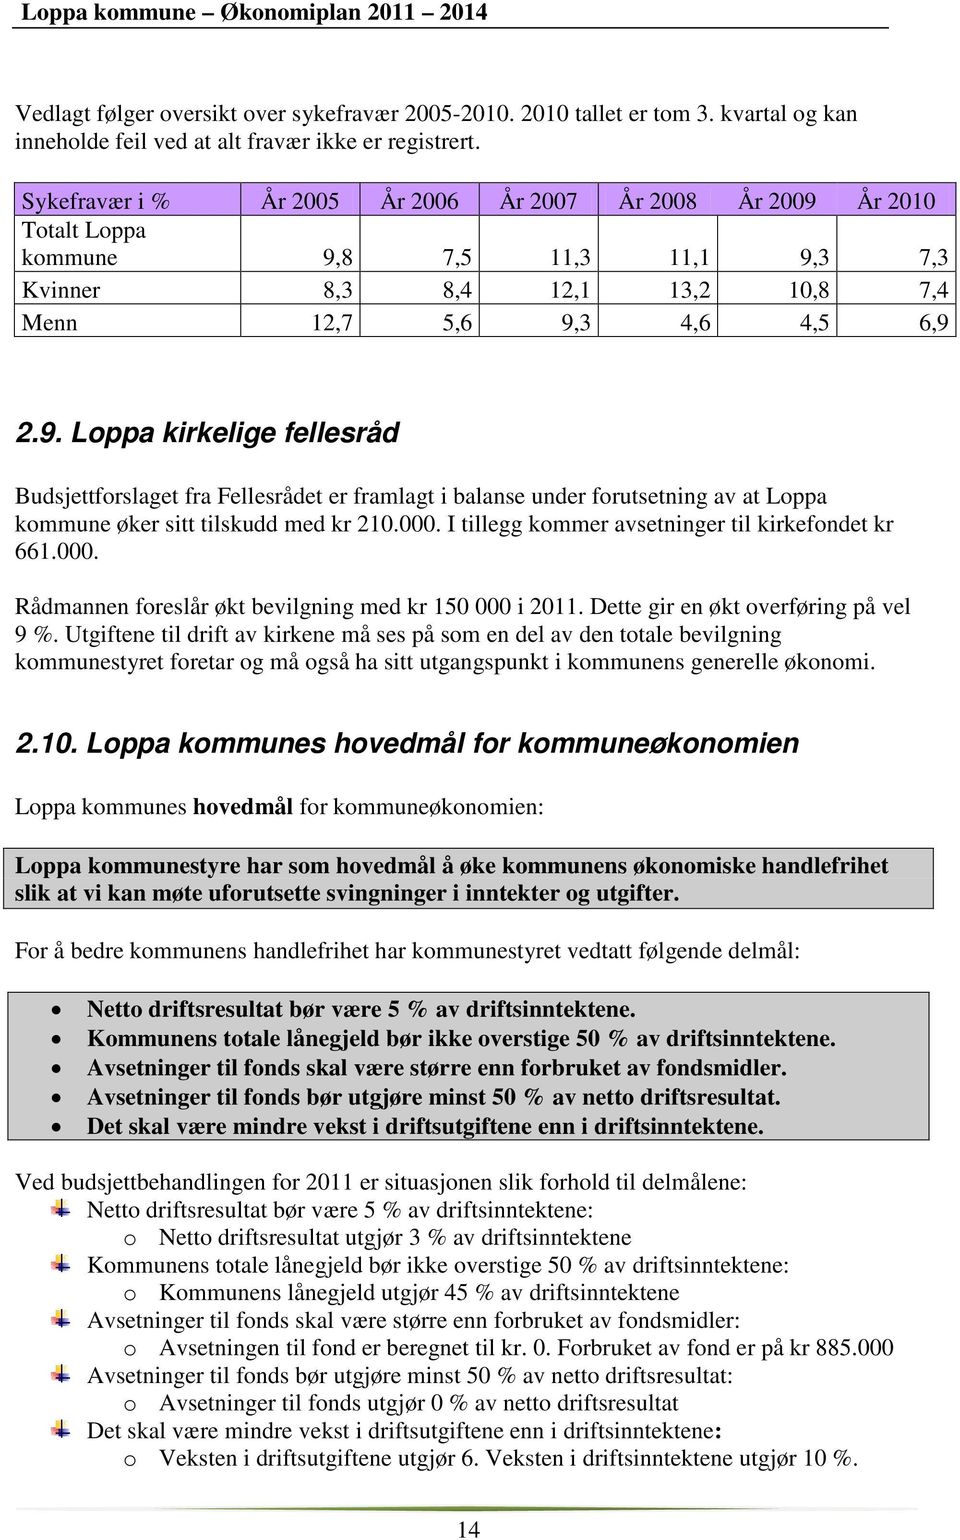 År 2010 Totalt Loppa kommune 9,8 7,5 11,3 11,1 9,3 7,3 Kvinner 8,3 8,4 12,1 13,2 10,8 7,4 Menn 12,7 5,6 9,3 4,6 4,5 6,9 2.9. Loppa kirkelige fellesråd Budsjettforslaget fra Fellesrådet er framlagt i balanse under forutsetning av at Loppa kommune øker sitt tilskudd med kr 210.